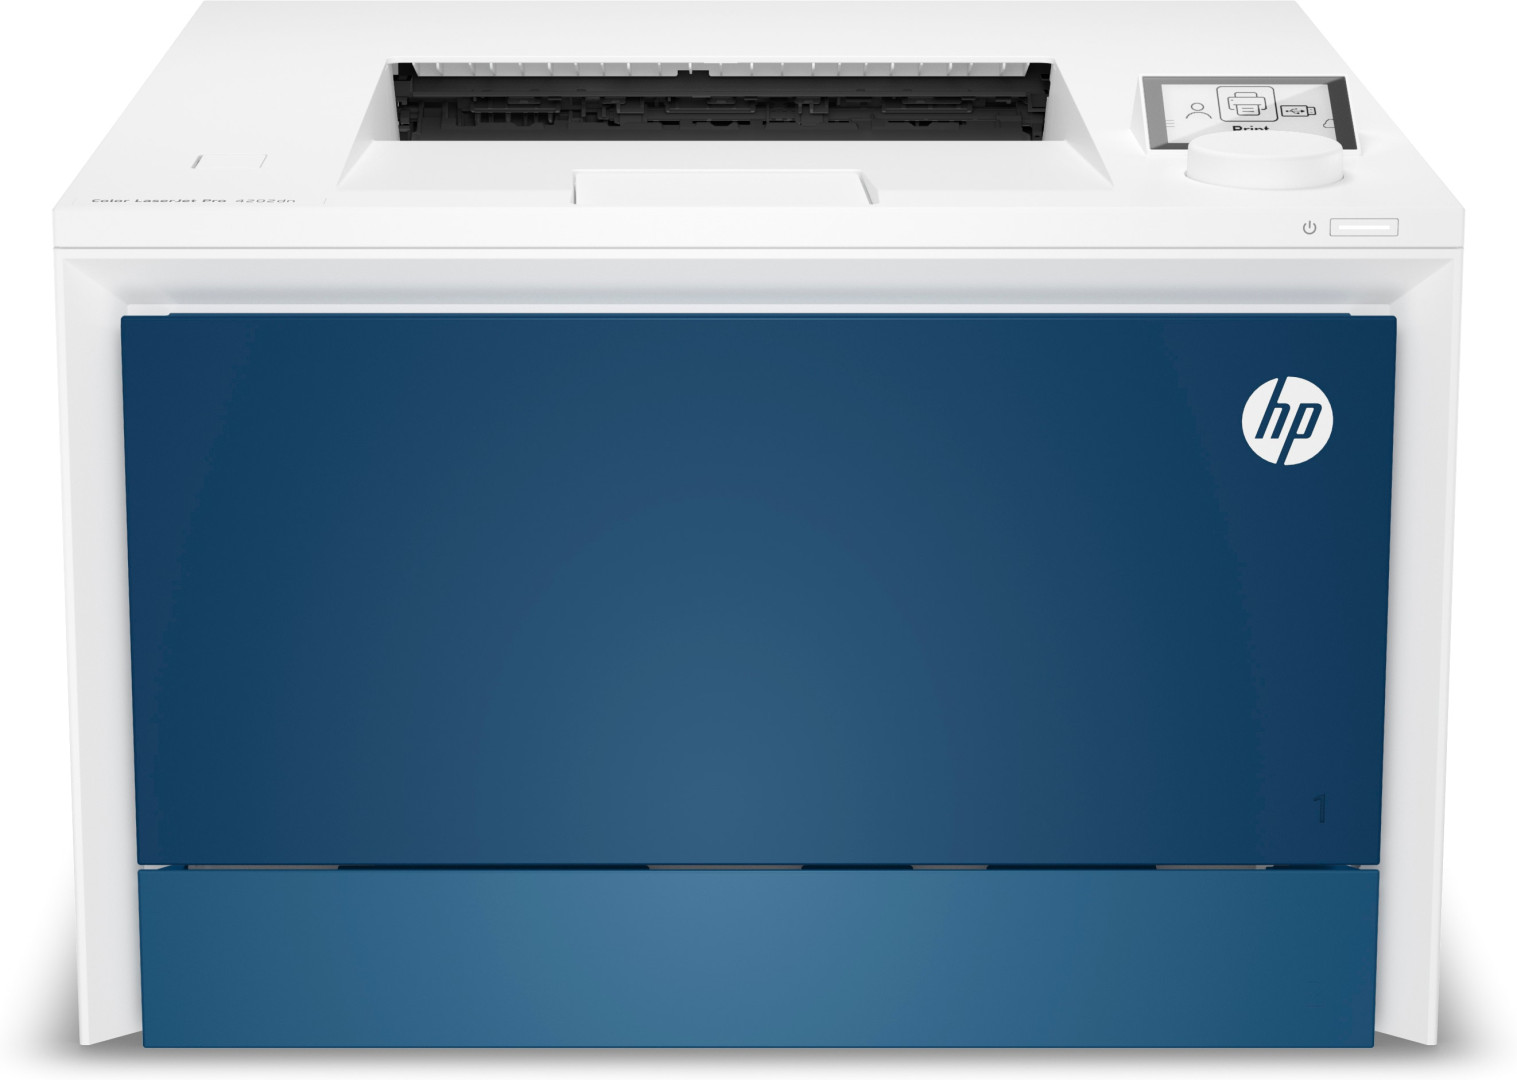 HP Color LaserJet Pro Stampante 4202dn, Colore, Stampante per Piccole e medie imprese, Stampa, Stampa da smartphone o tablet; Stampa fronte/retro; Vassoi ad alta capacit- opzionali